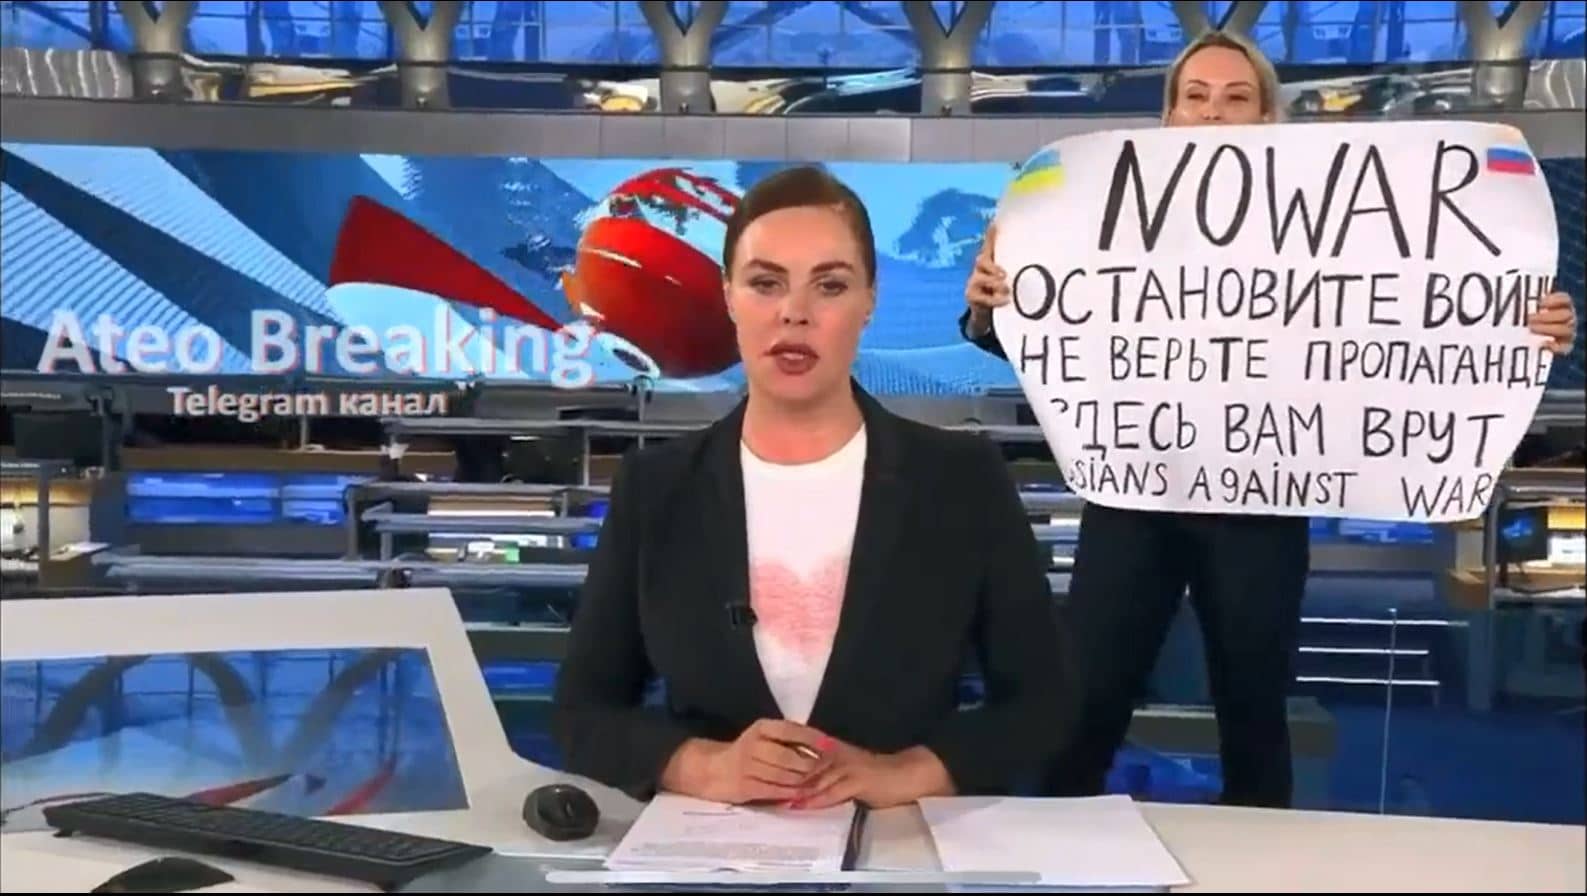 marina ovsynnikova la editora rusa que se manifesto contra la guerra durante noticiero en vivo